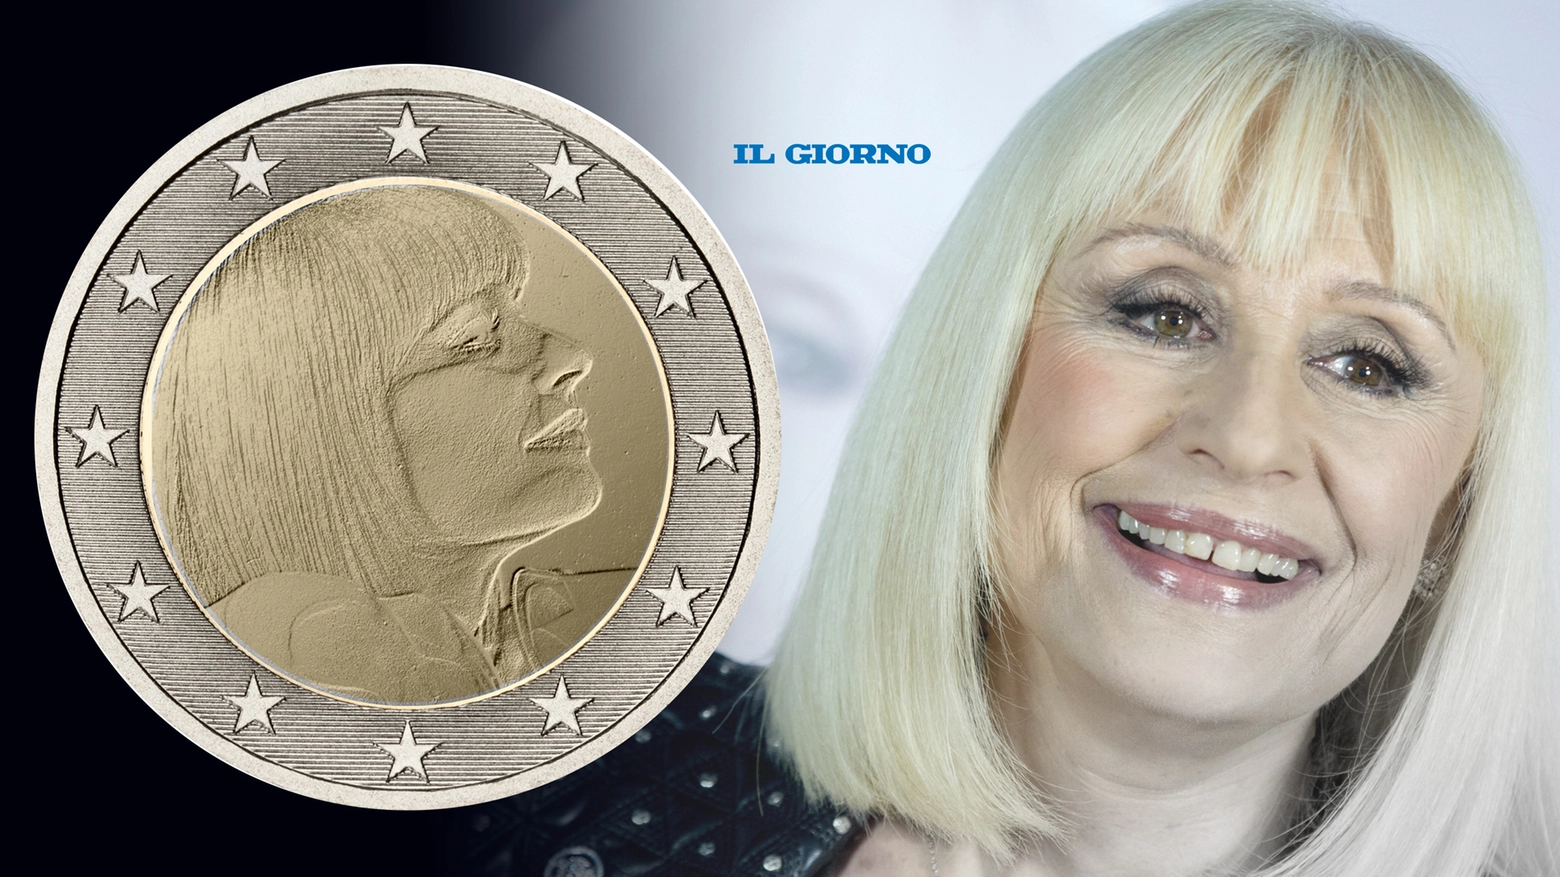 Il volto di Raffaella Carrà sarà impresso sulle monete da 2 euro